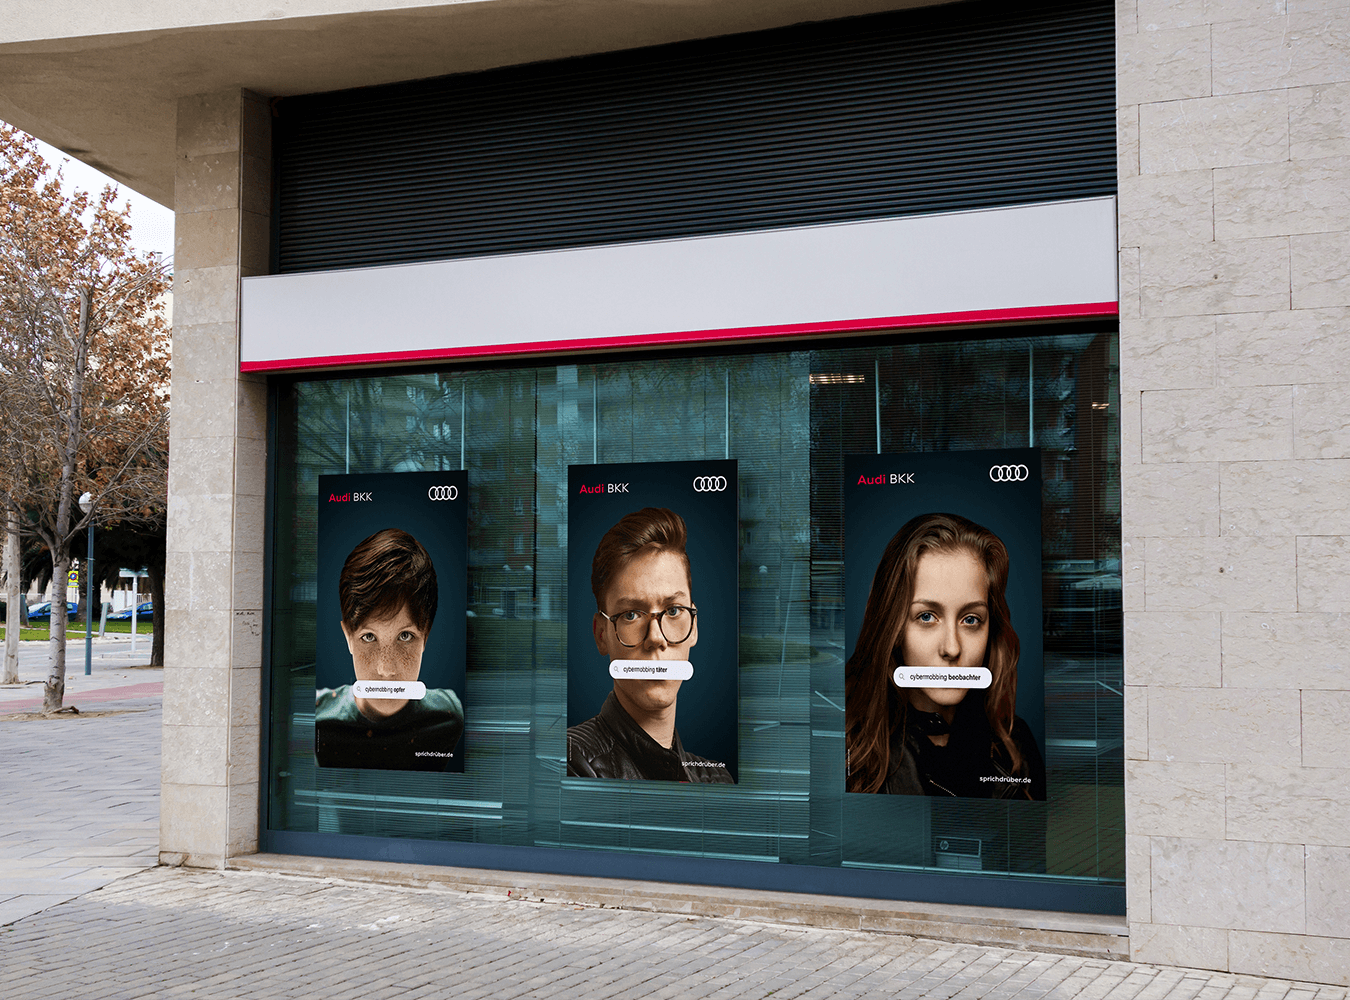 Blick auf Audi BKK Servicecenter mit Plakaten zum Thema Cybermobbing